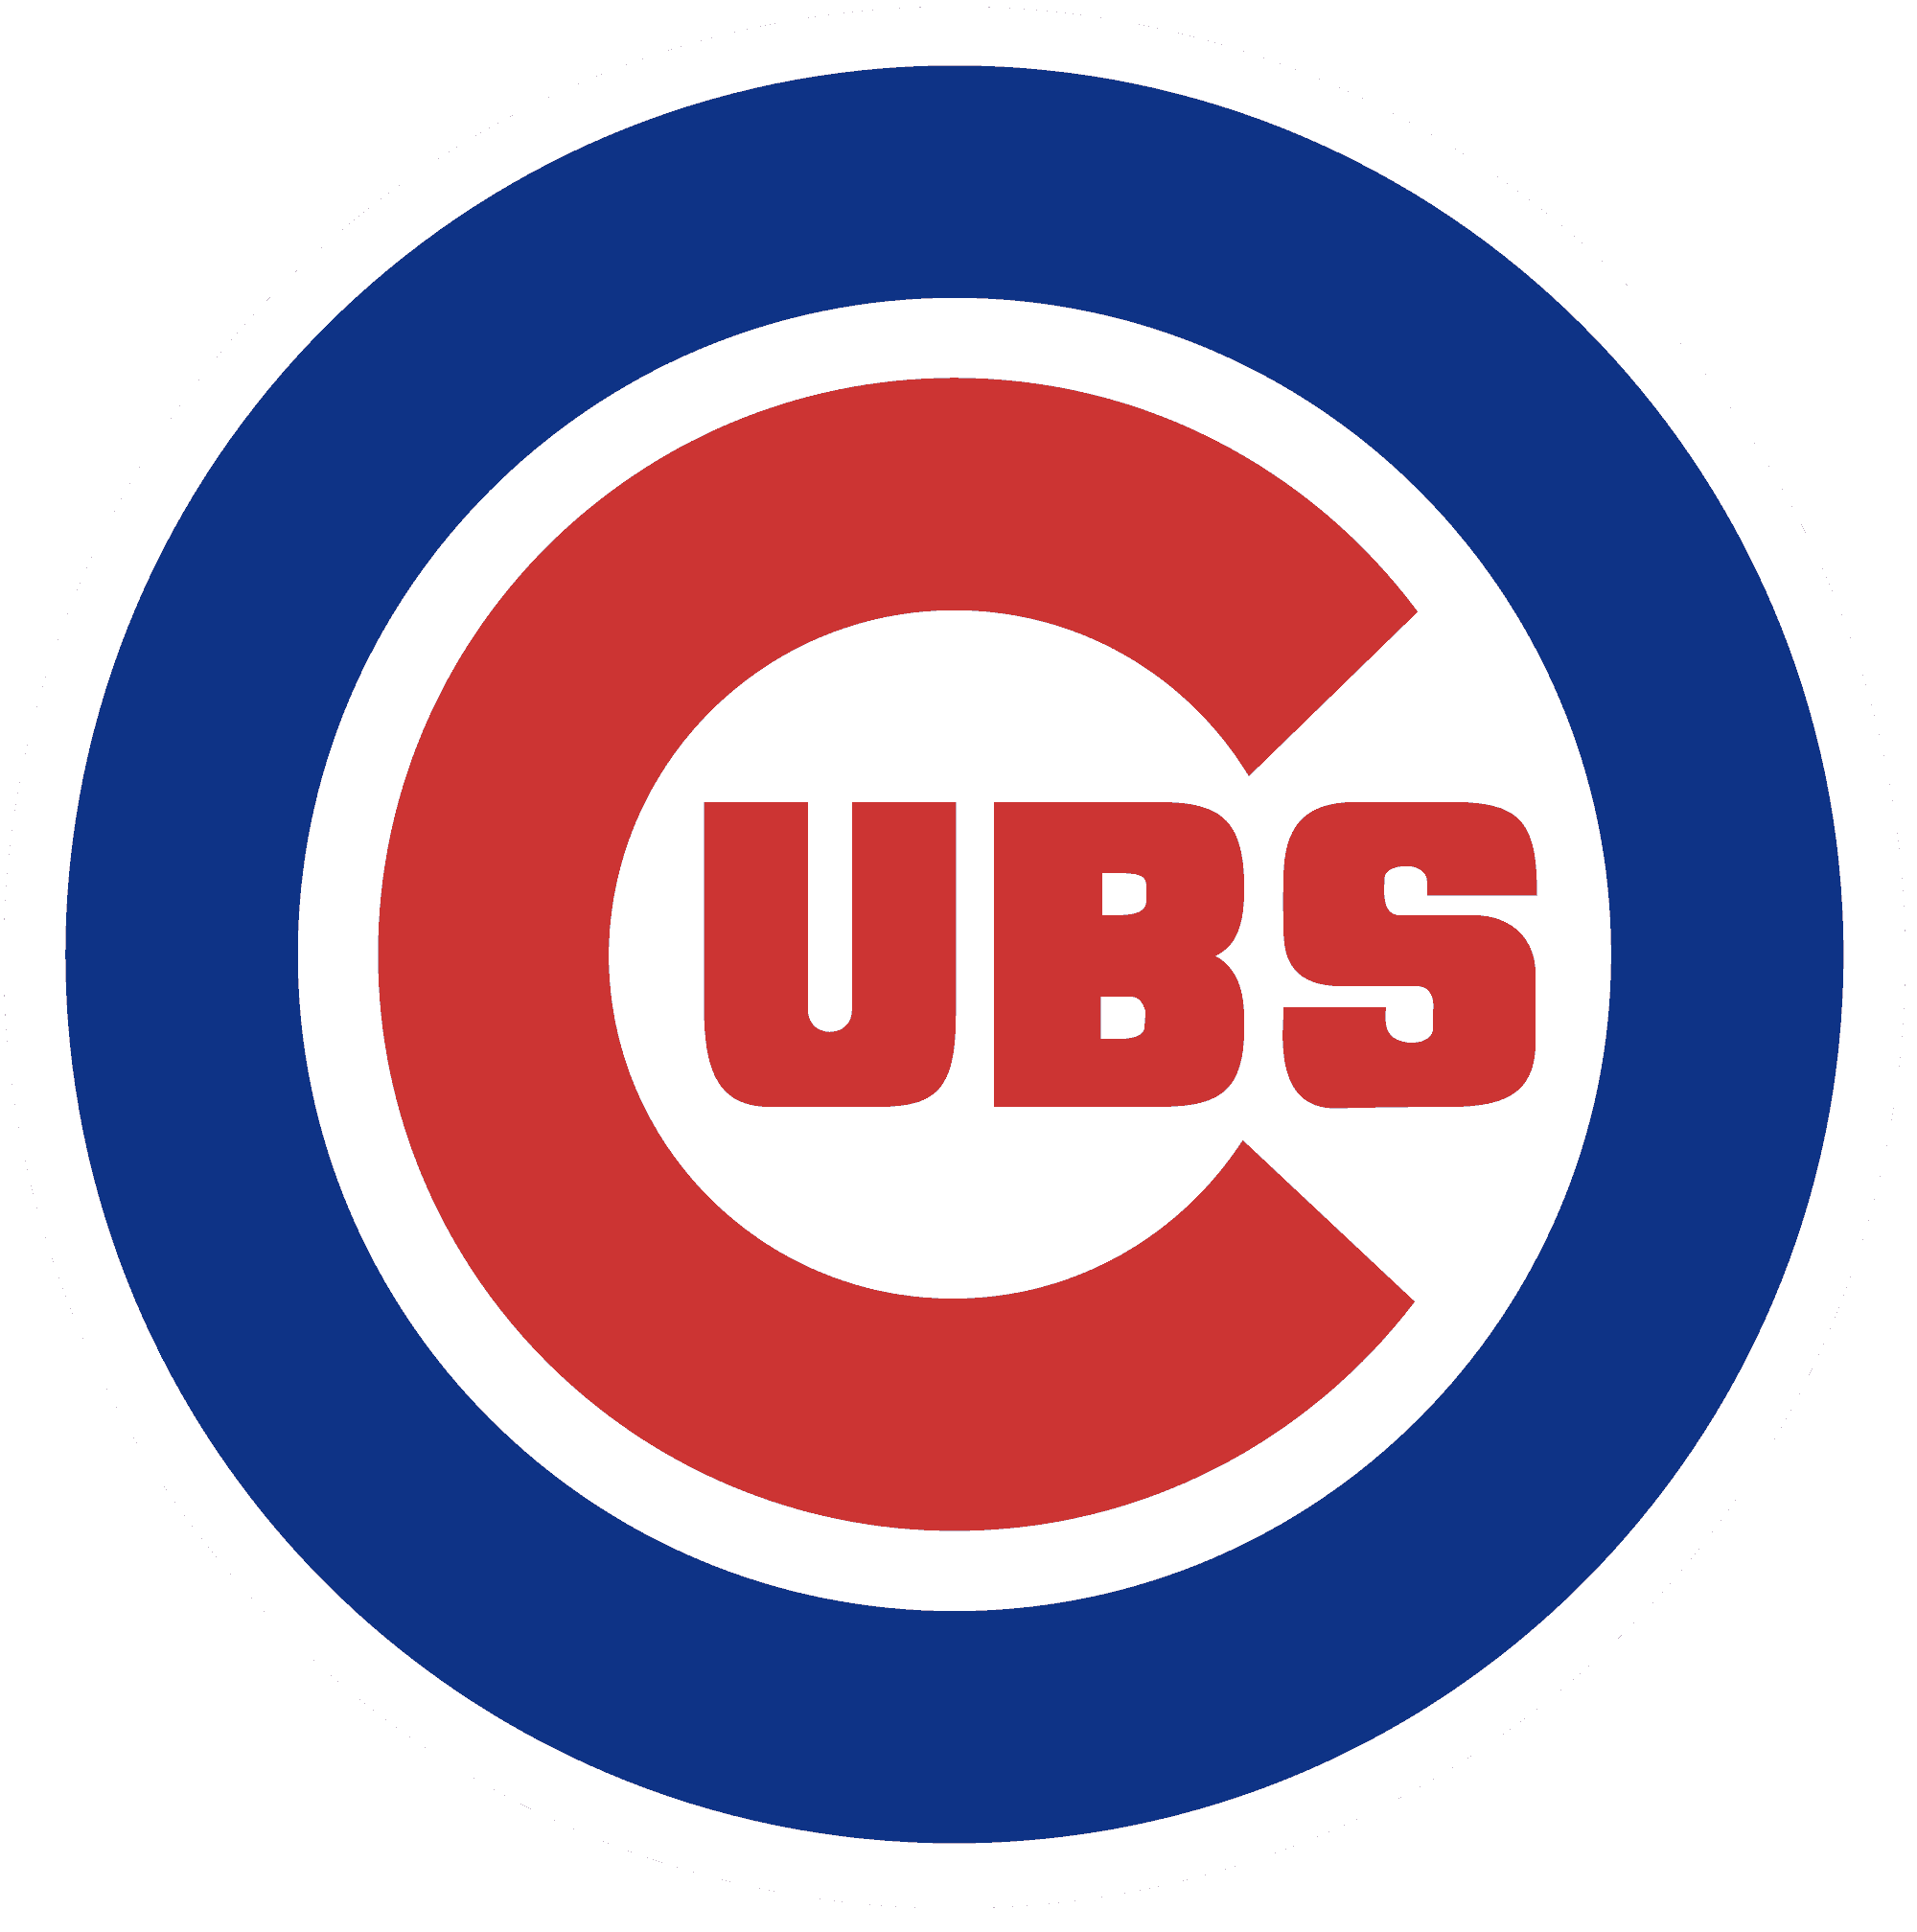 Chicago Cubs Lawsuit